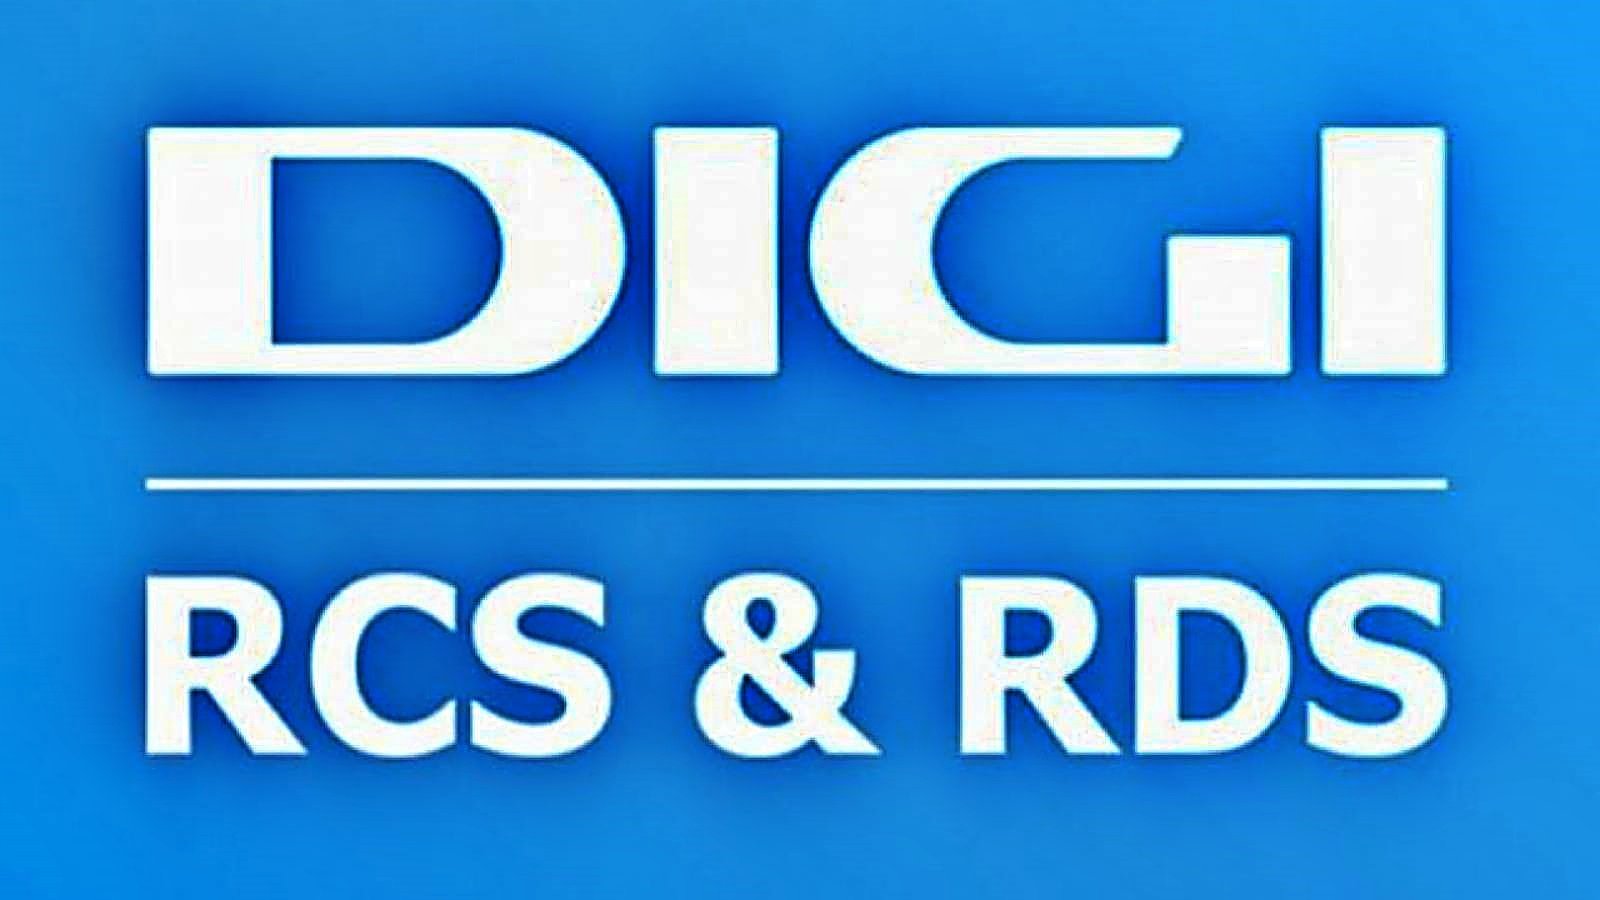 DIGI RCS & RDS OFFICIAL Announcement Major Change Beginning 2022